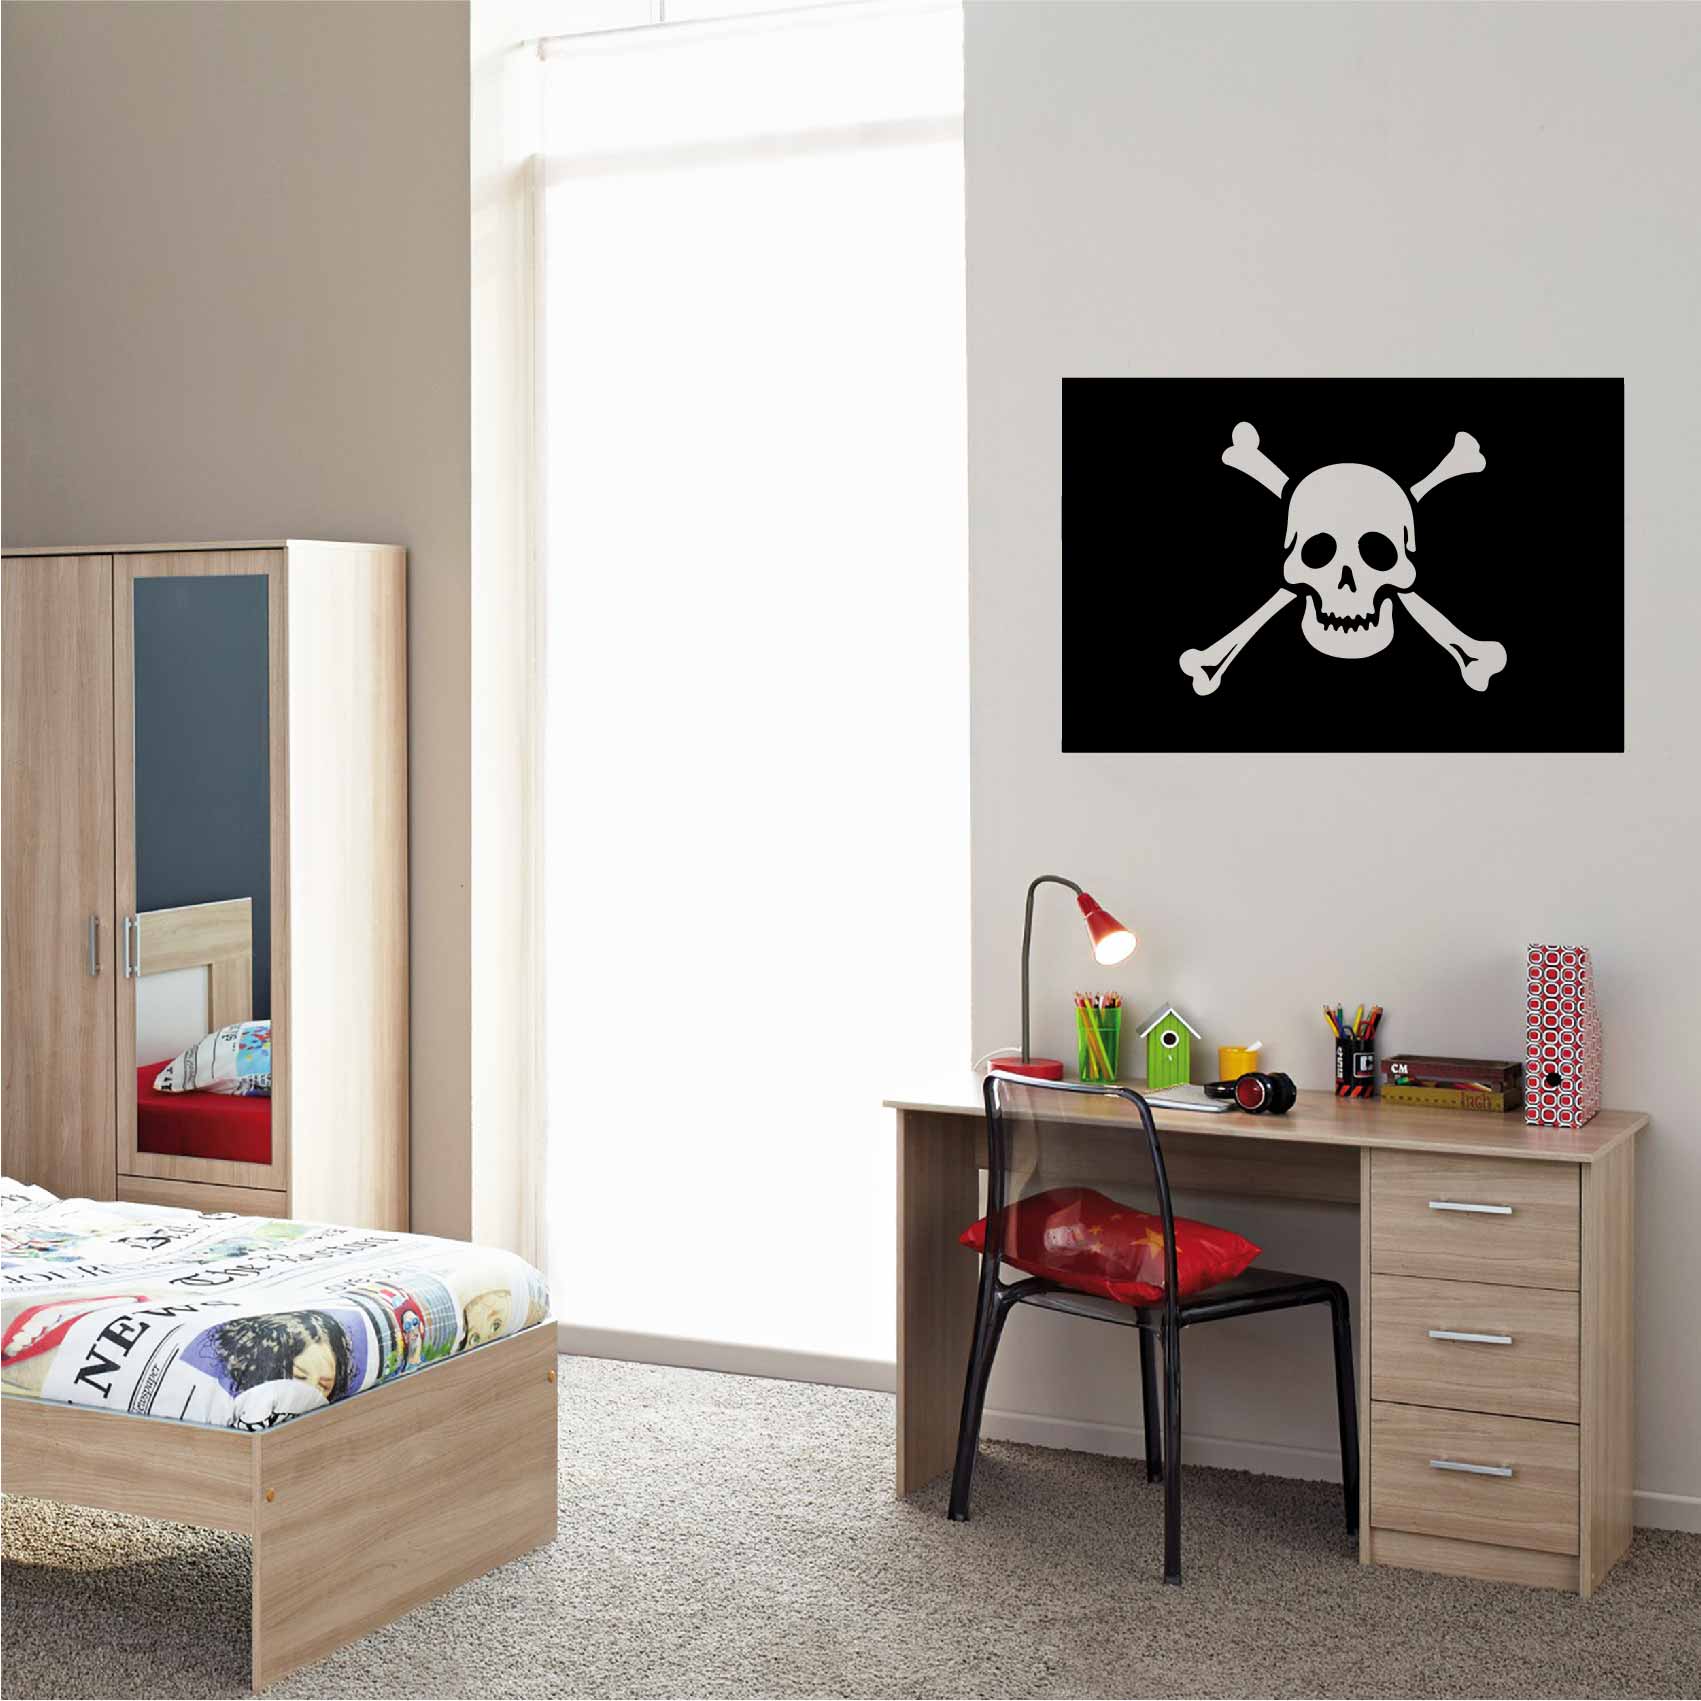 Stickers Pirate tete de mort - Autocollant muraux et deco